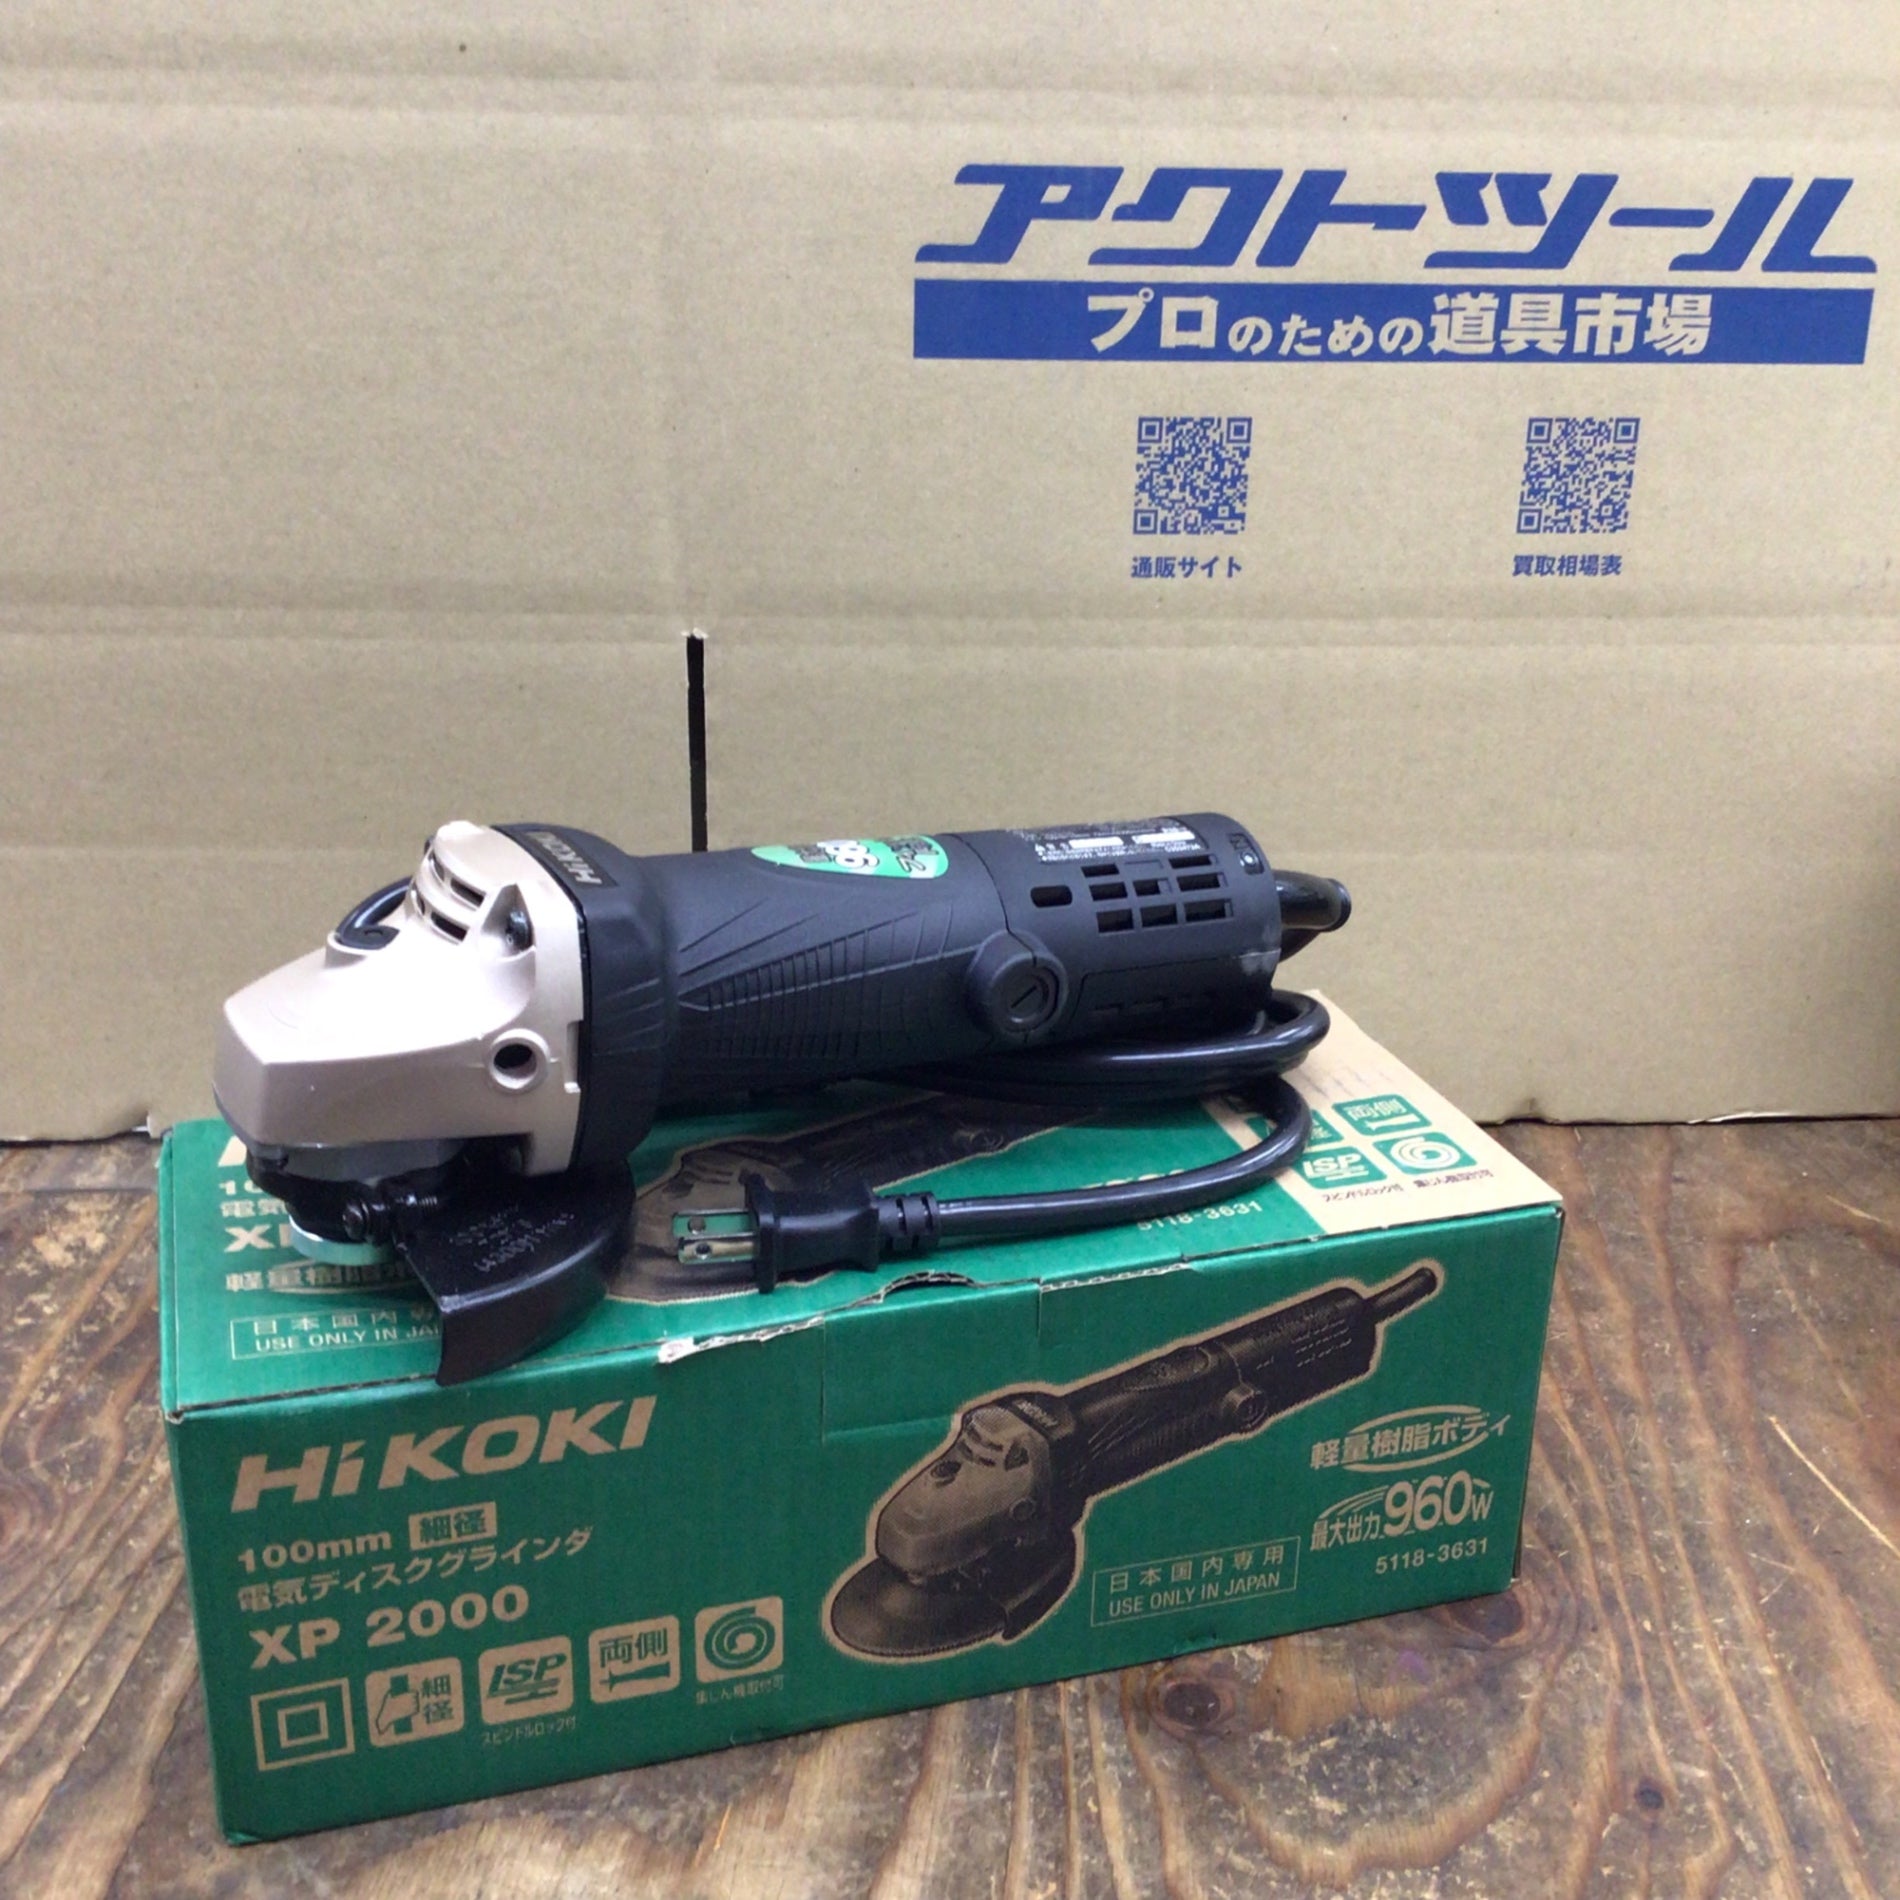 HiKOKI(ハイコーキ) PDA-100J 電気ディスクグラインダ